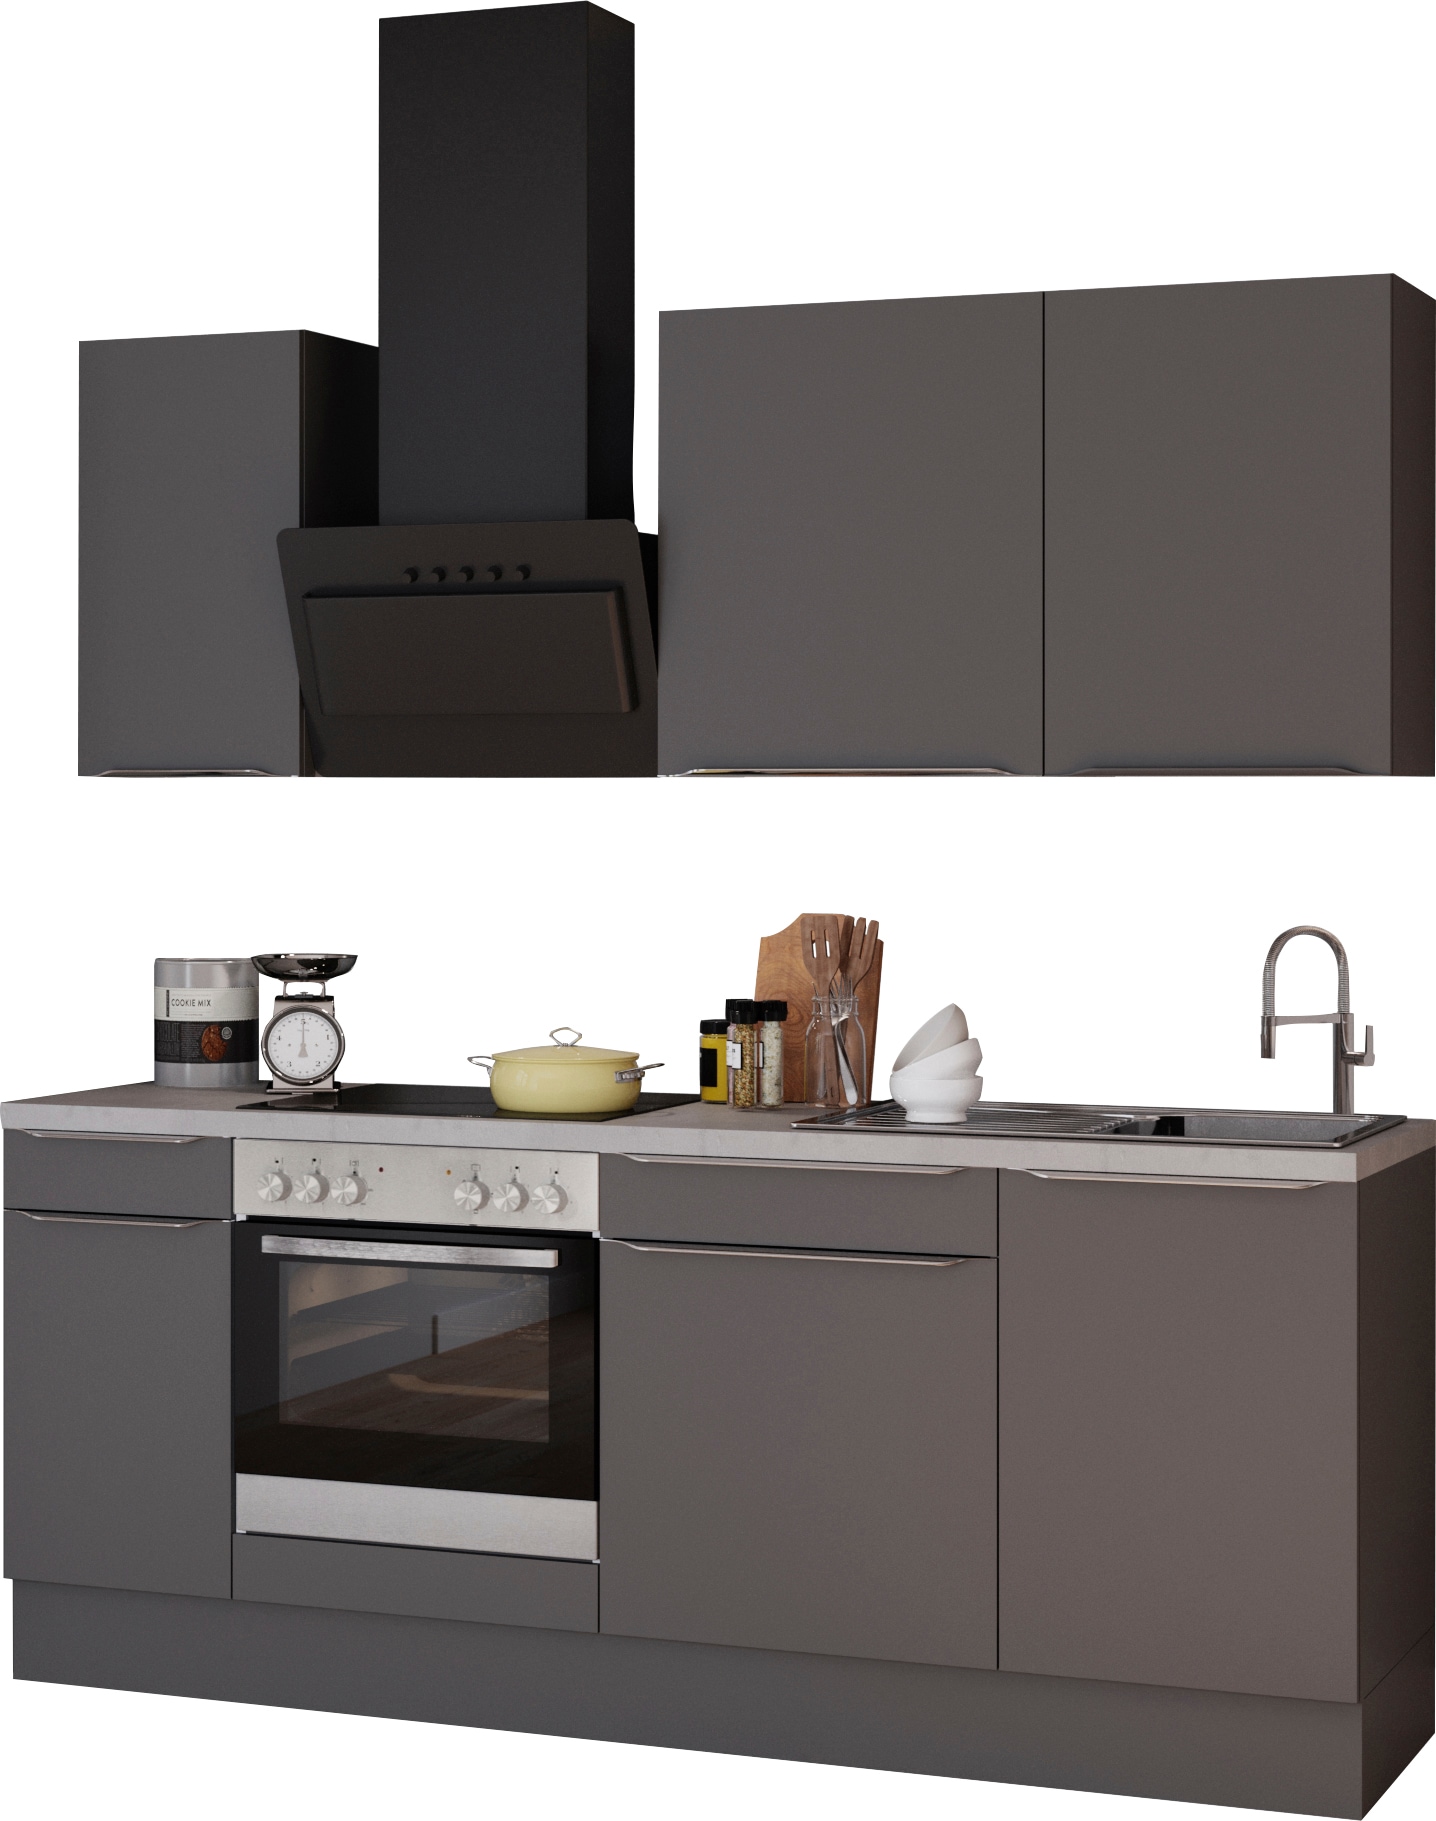 OPTIFIT Küchenzeile »Aken«, mit E-Geräten, Breite 210 cm kaufen bei OTTO